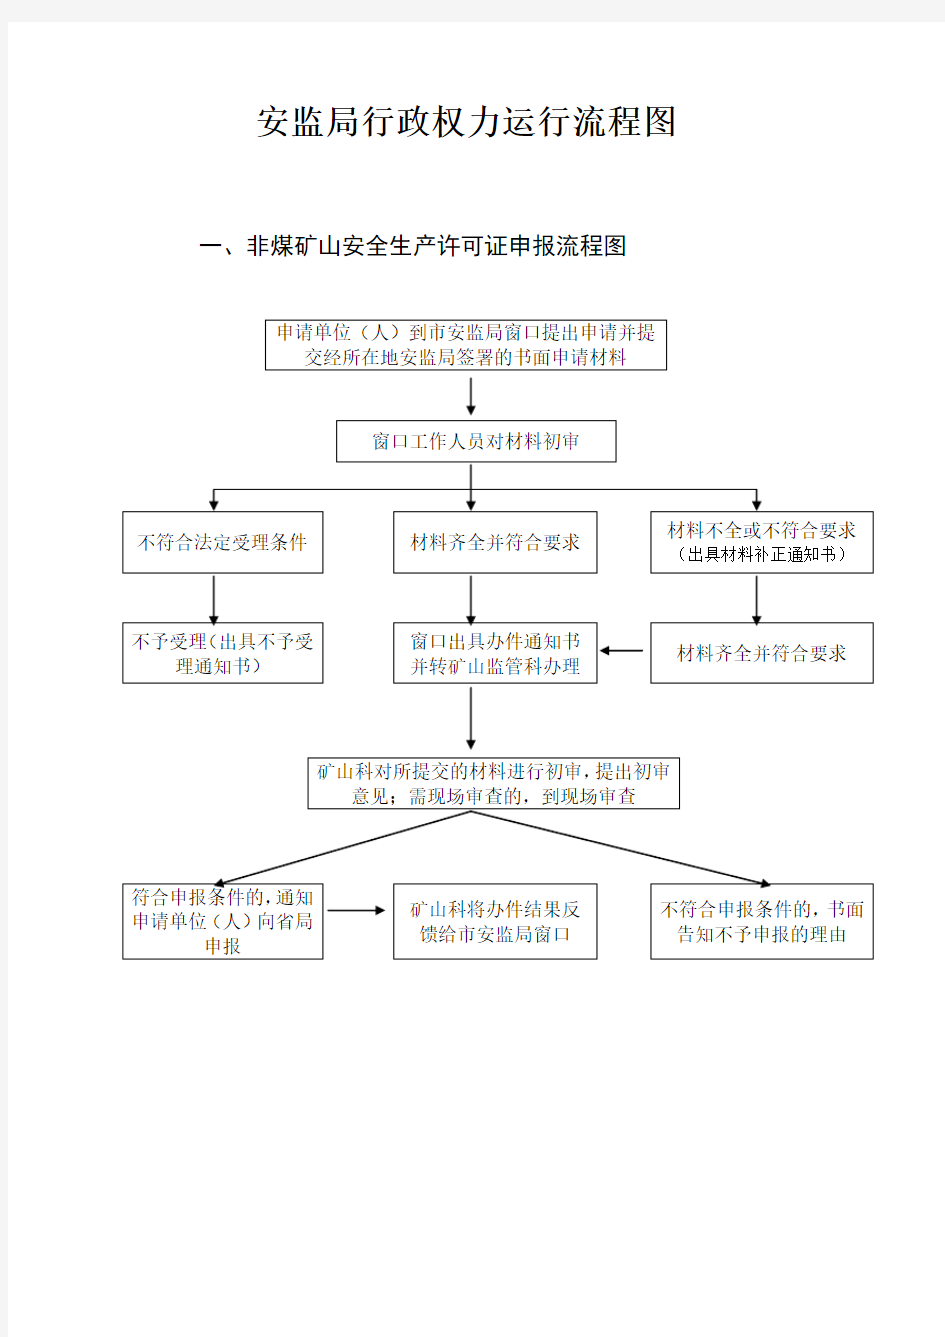 安监局行政权力运行流程图